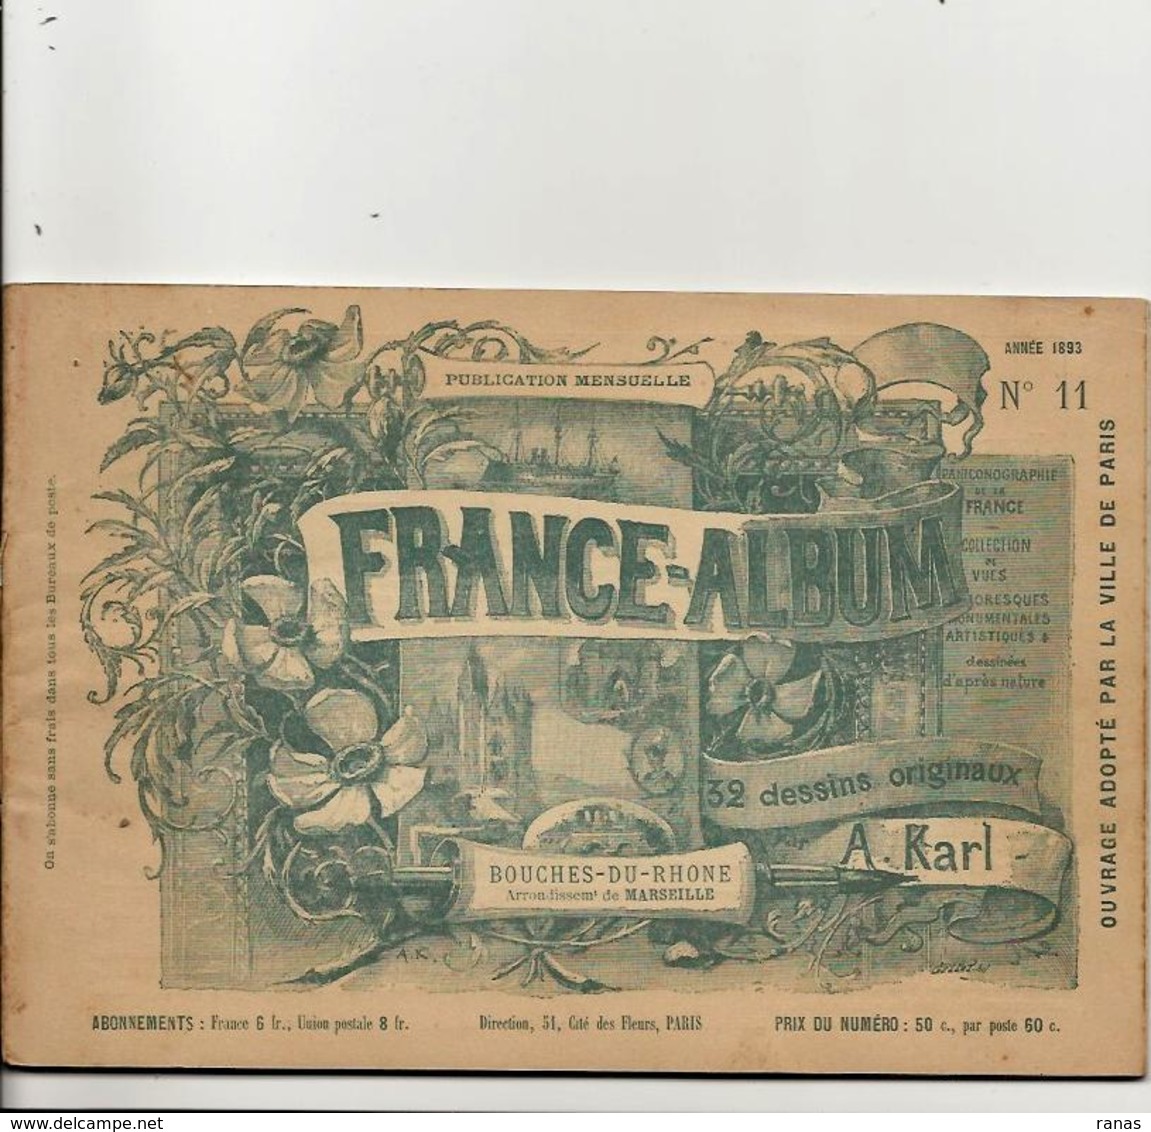 Bouches Du Rhône 13 France Album De A. KARL, Carte Gravures Texte Publicités 1893 - Reiseprospekte